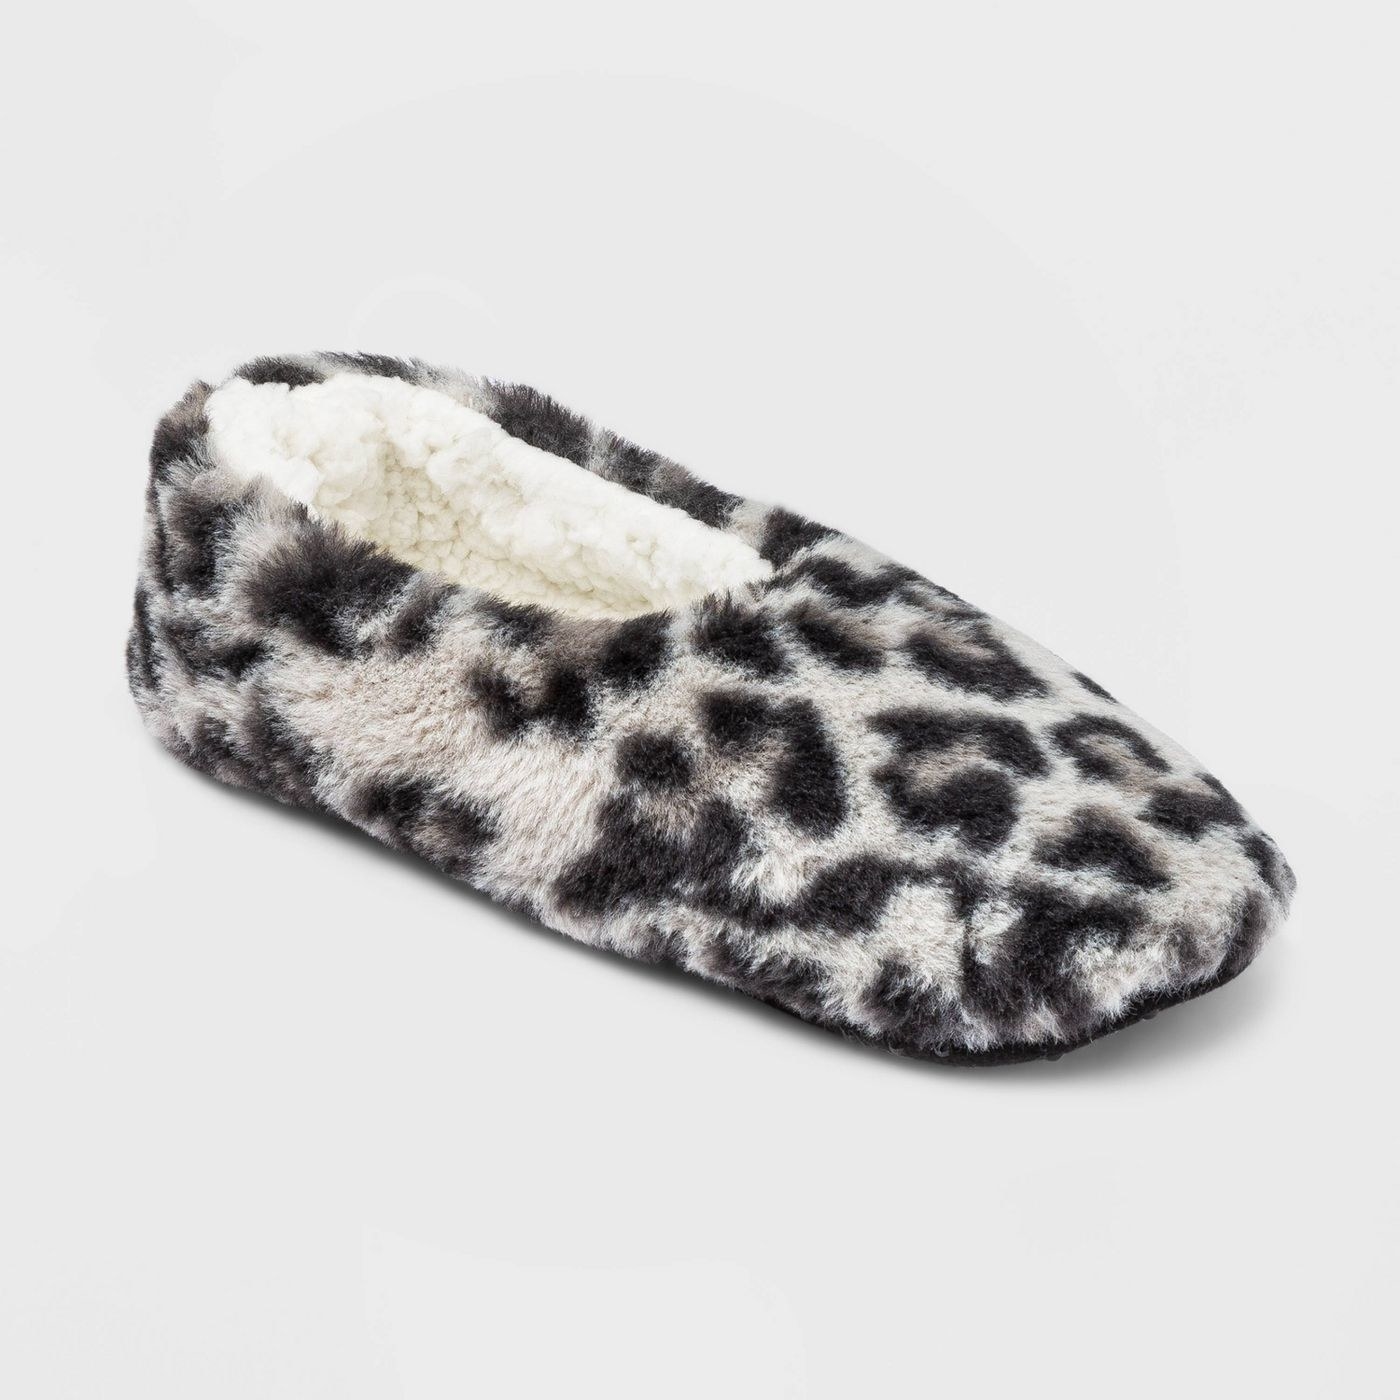 A leopard slipper